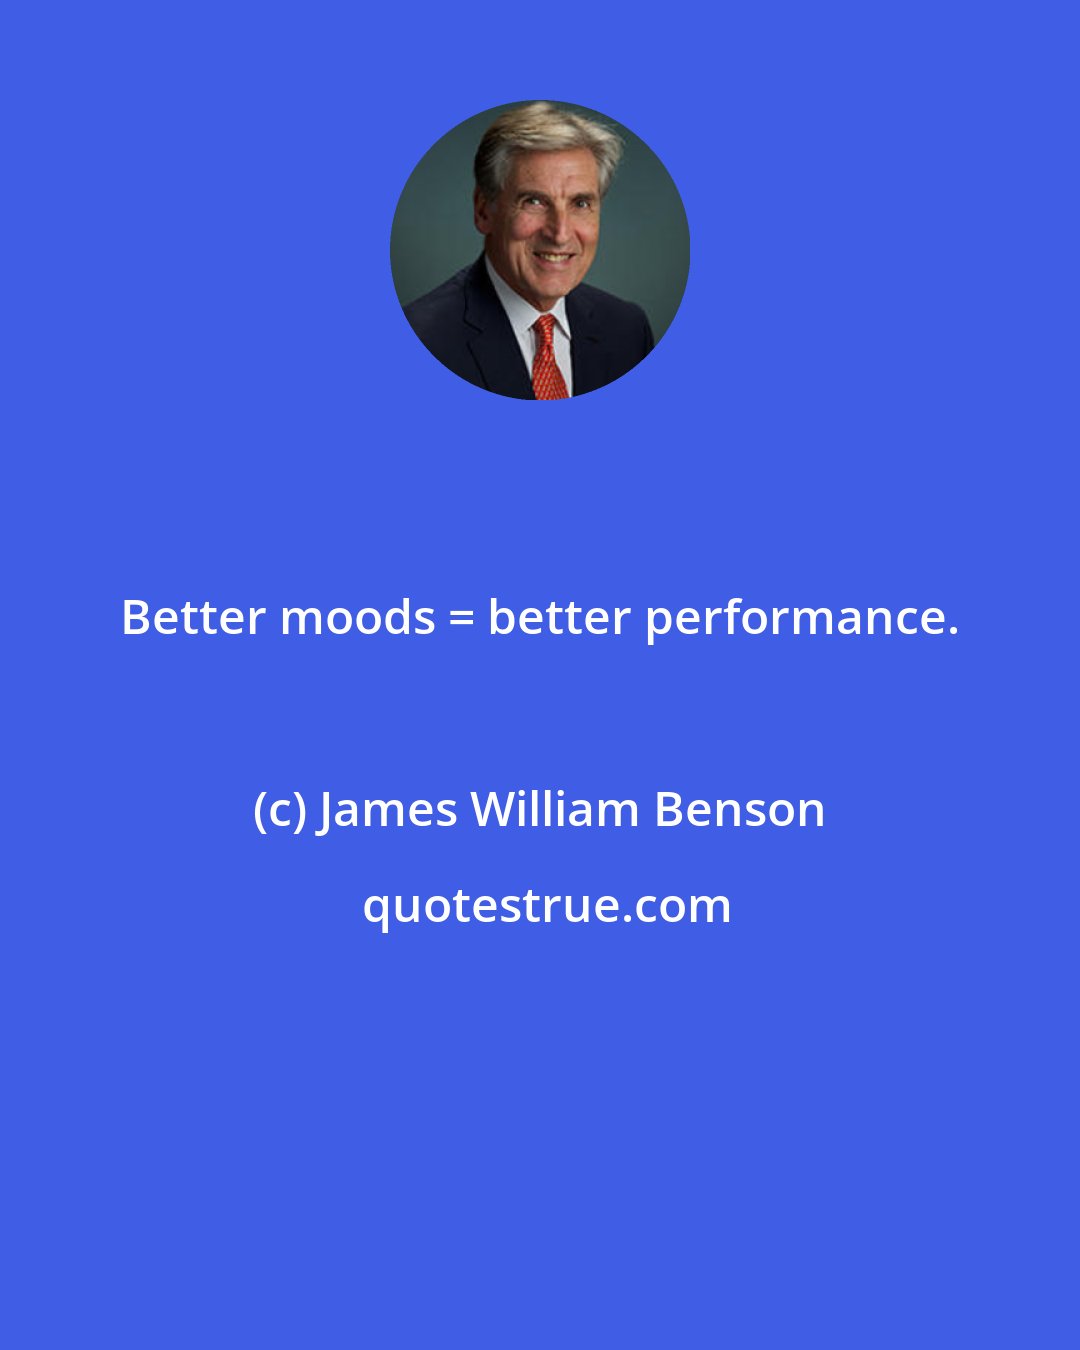 James William Benson: Better moods = better performance.